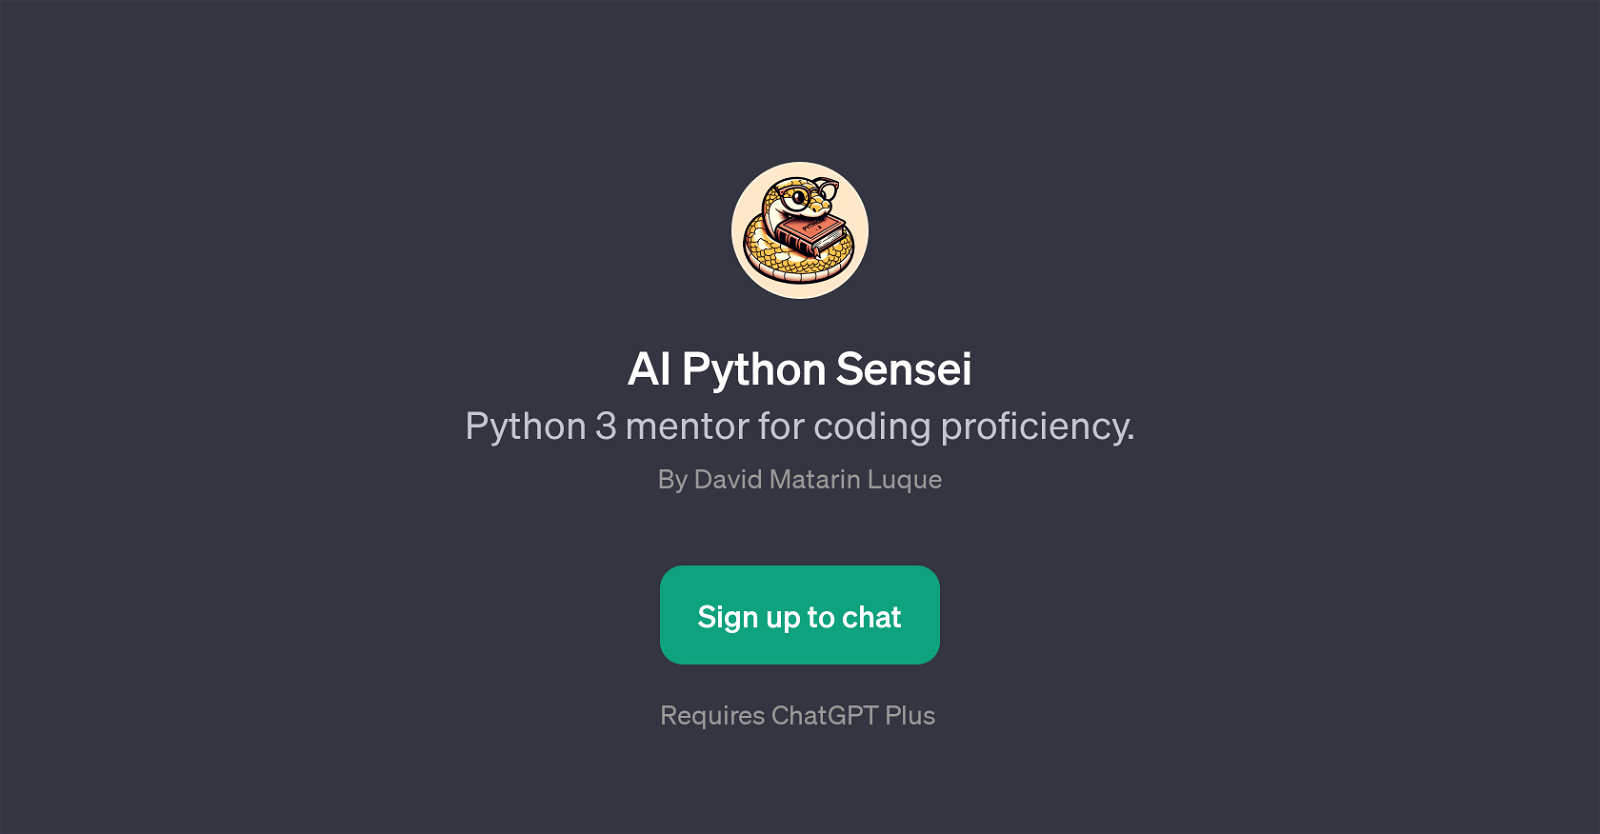 AI Python Sensei website